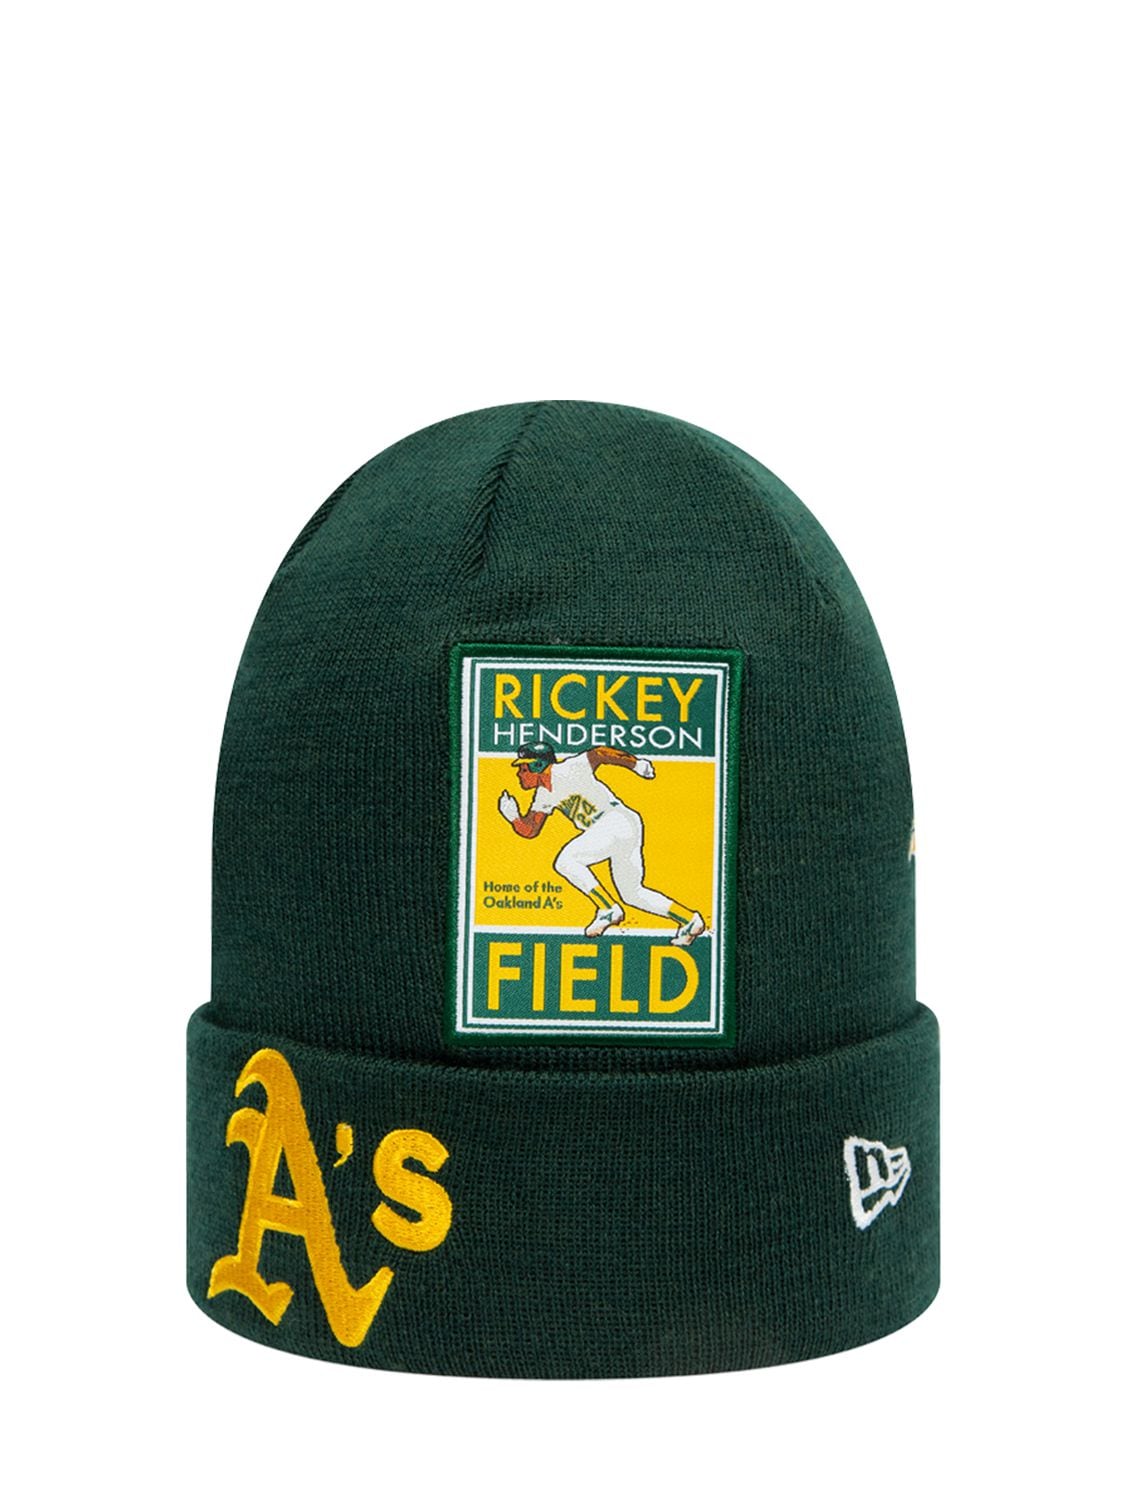 Oakland Athletics New Era Elephant 39THIRTY Flex Hat - Green